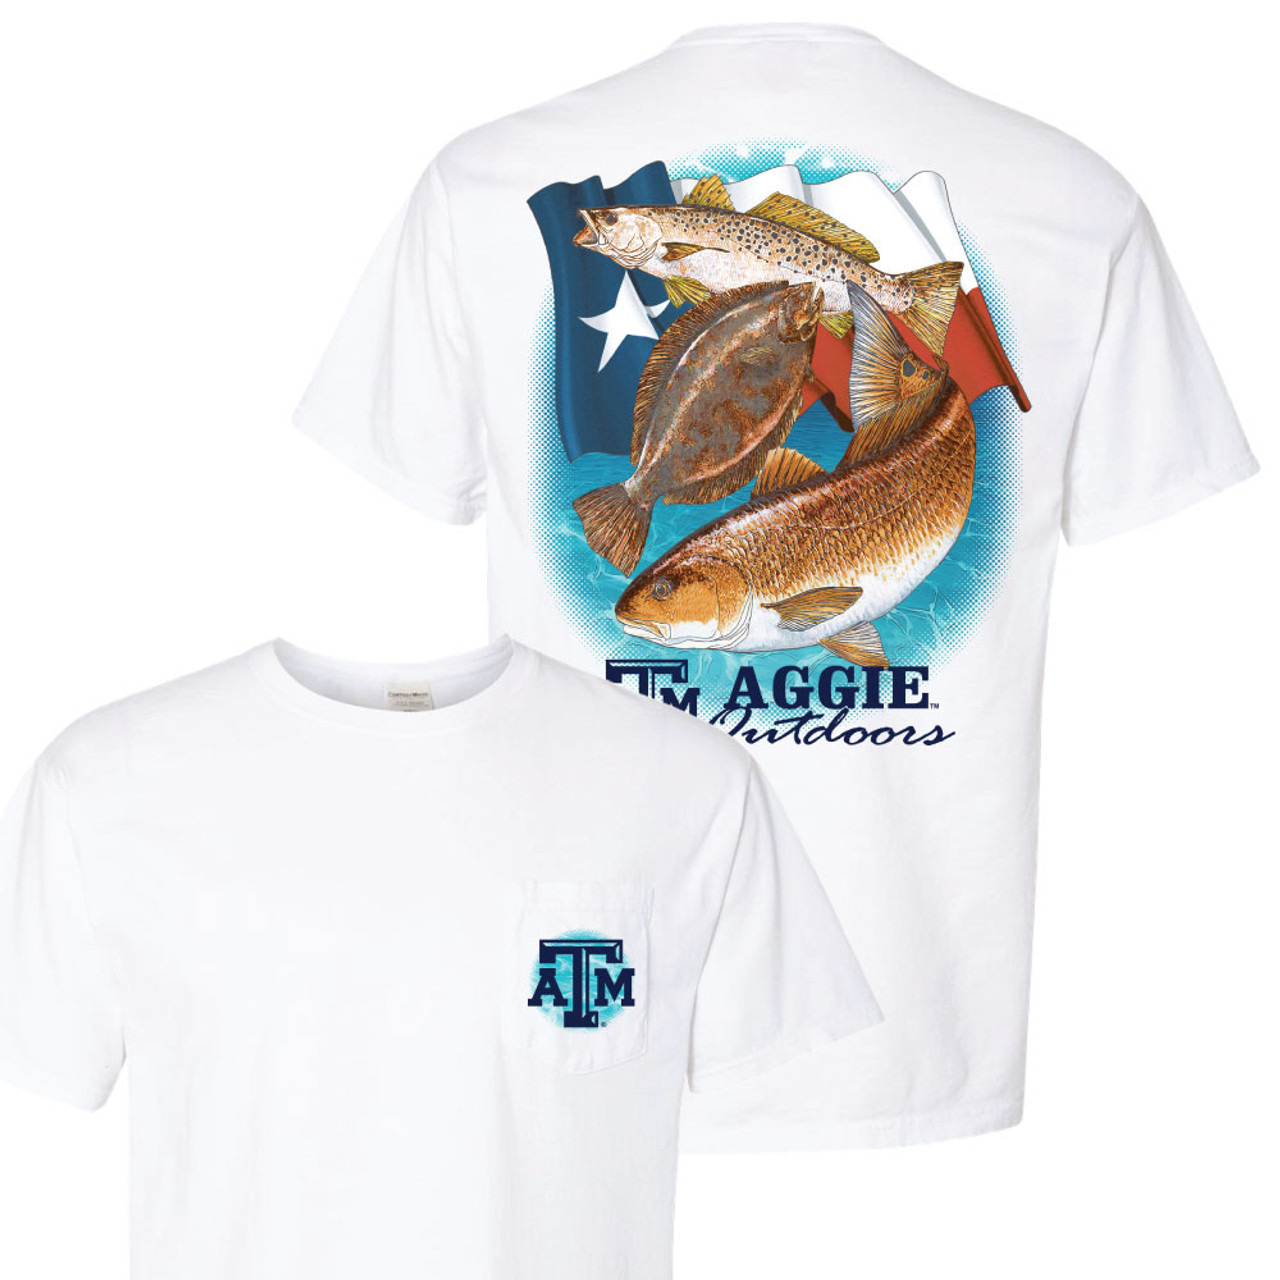 Texas A&M Aggies t-shirt 👍🏻 Tagged a small 💯% - Depop